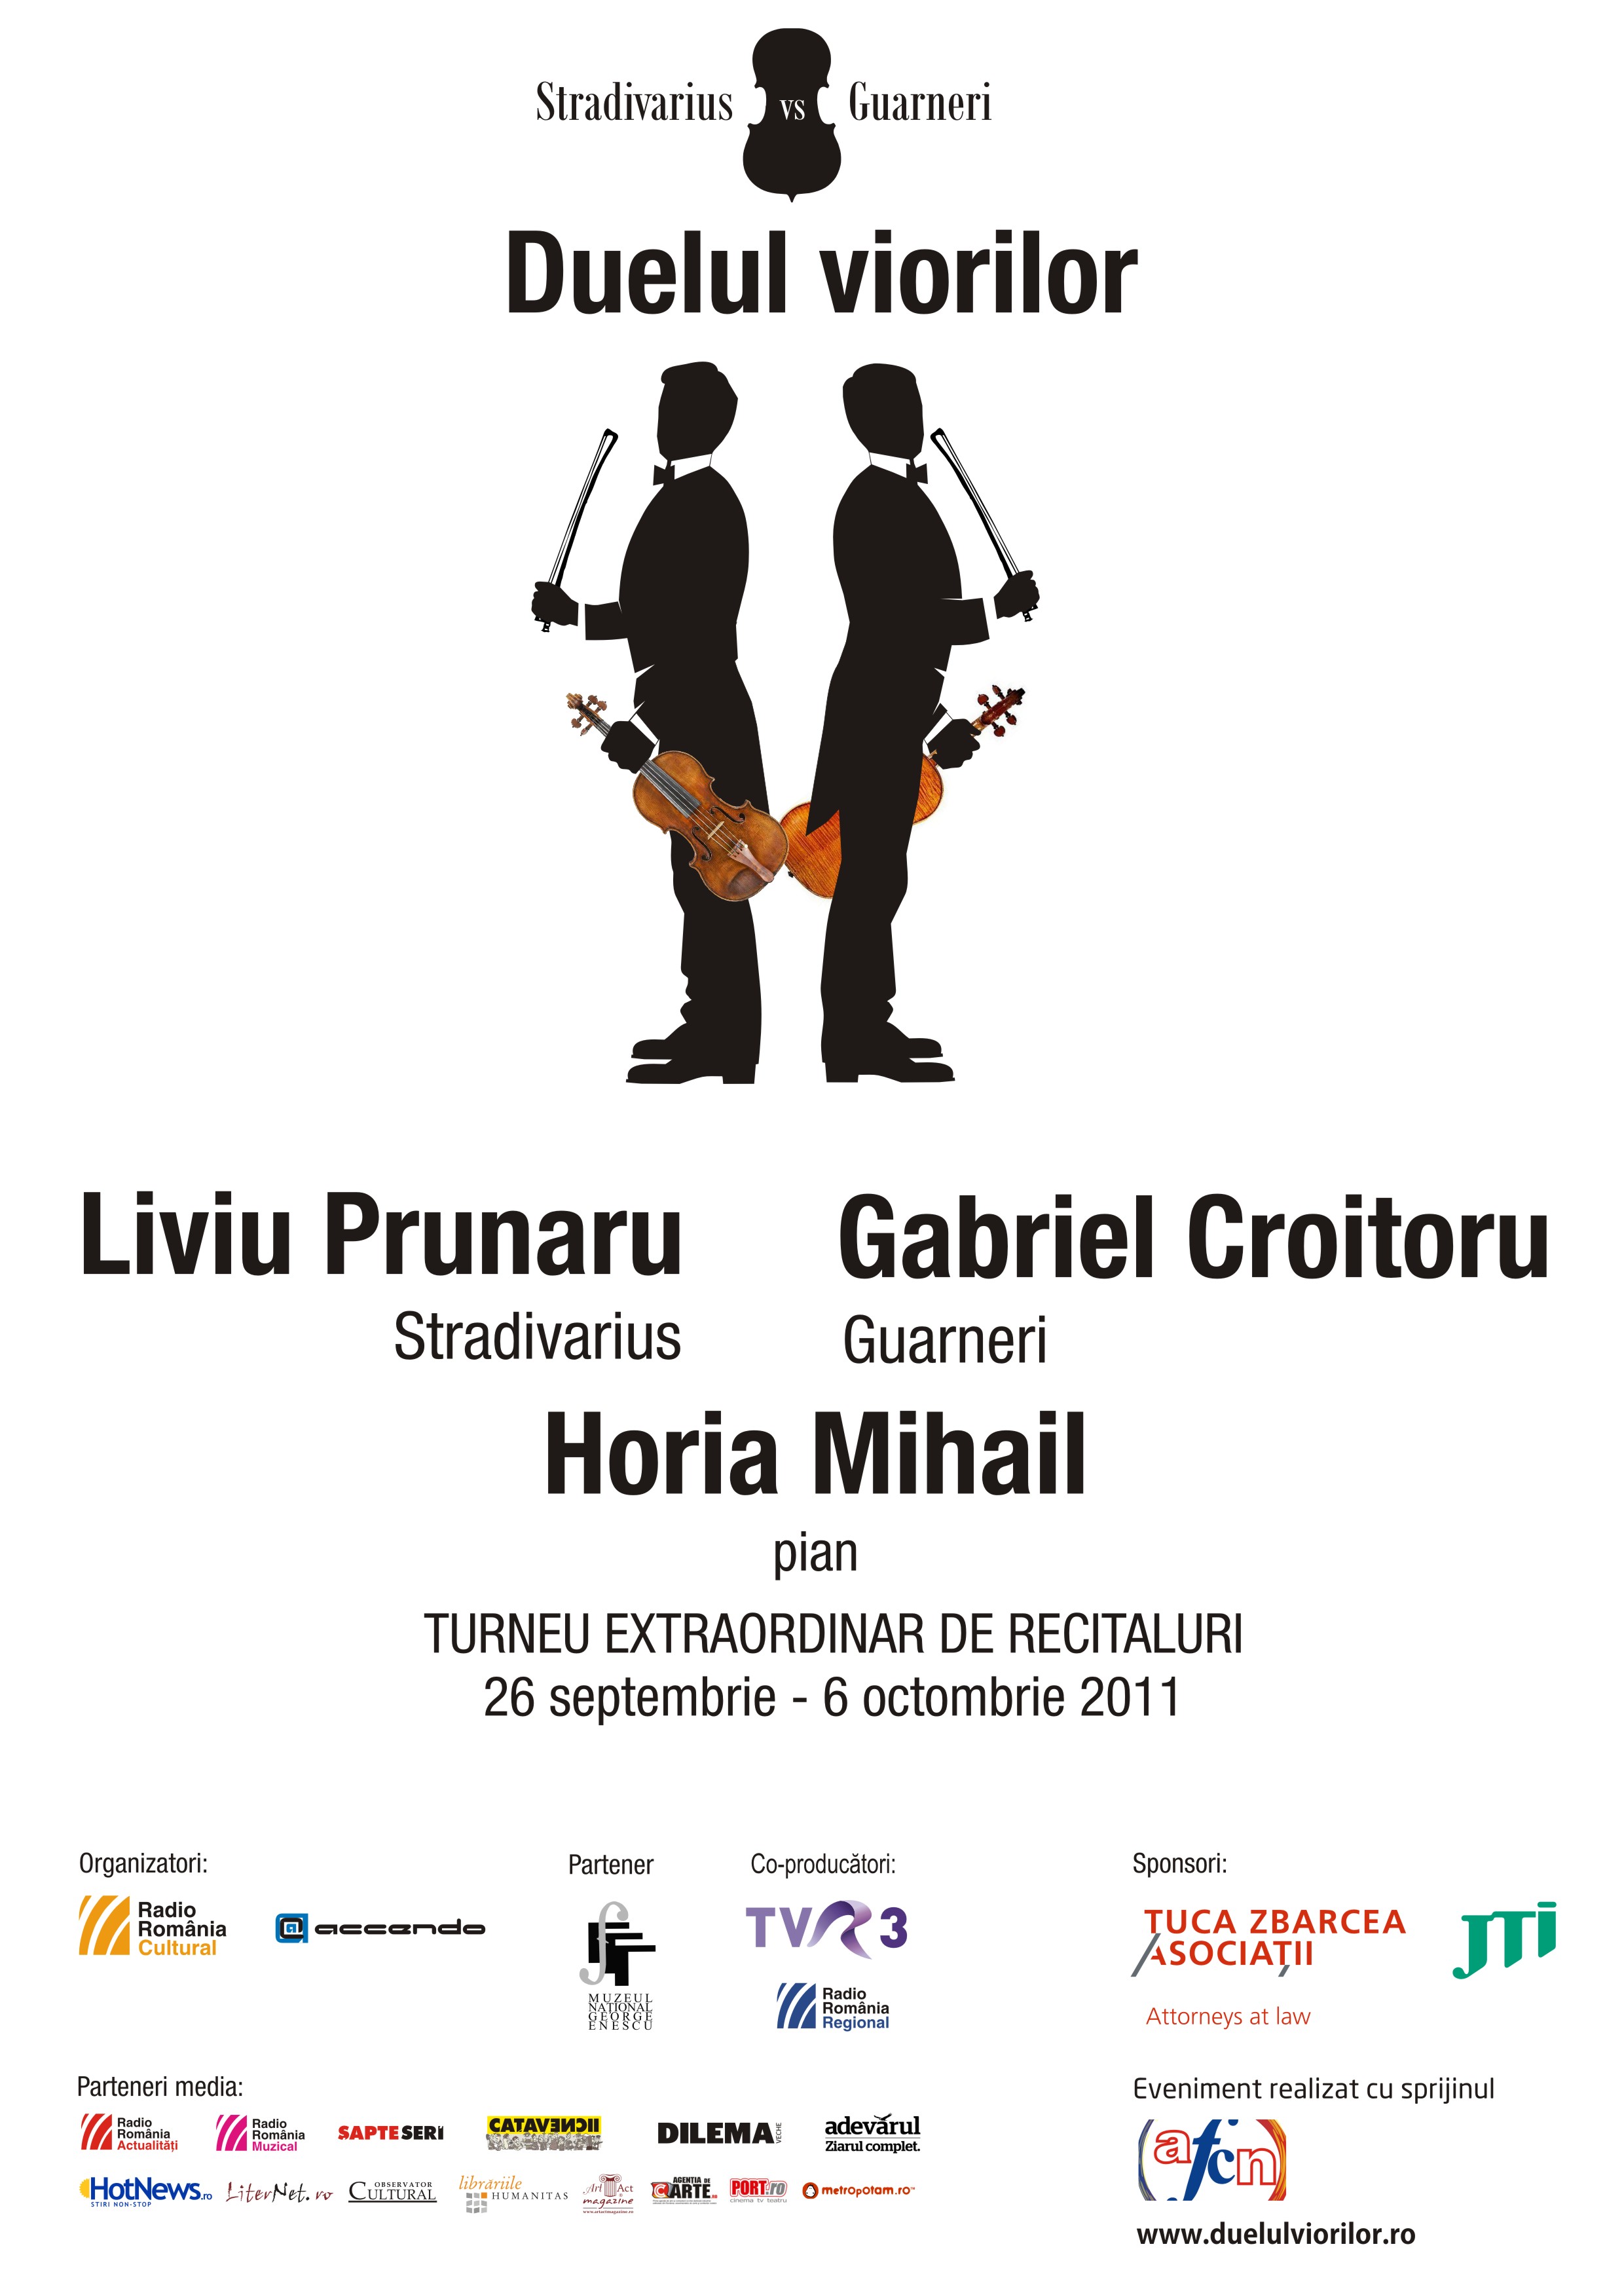 Stradivarius versus Guarneri. Turneul Duelul viorilor începe astazi la Târgu Mureş